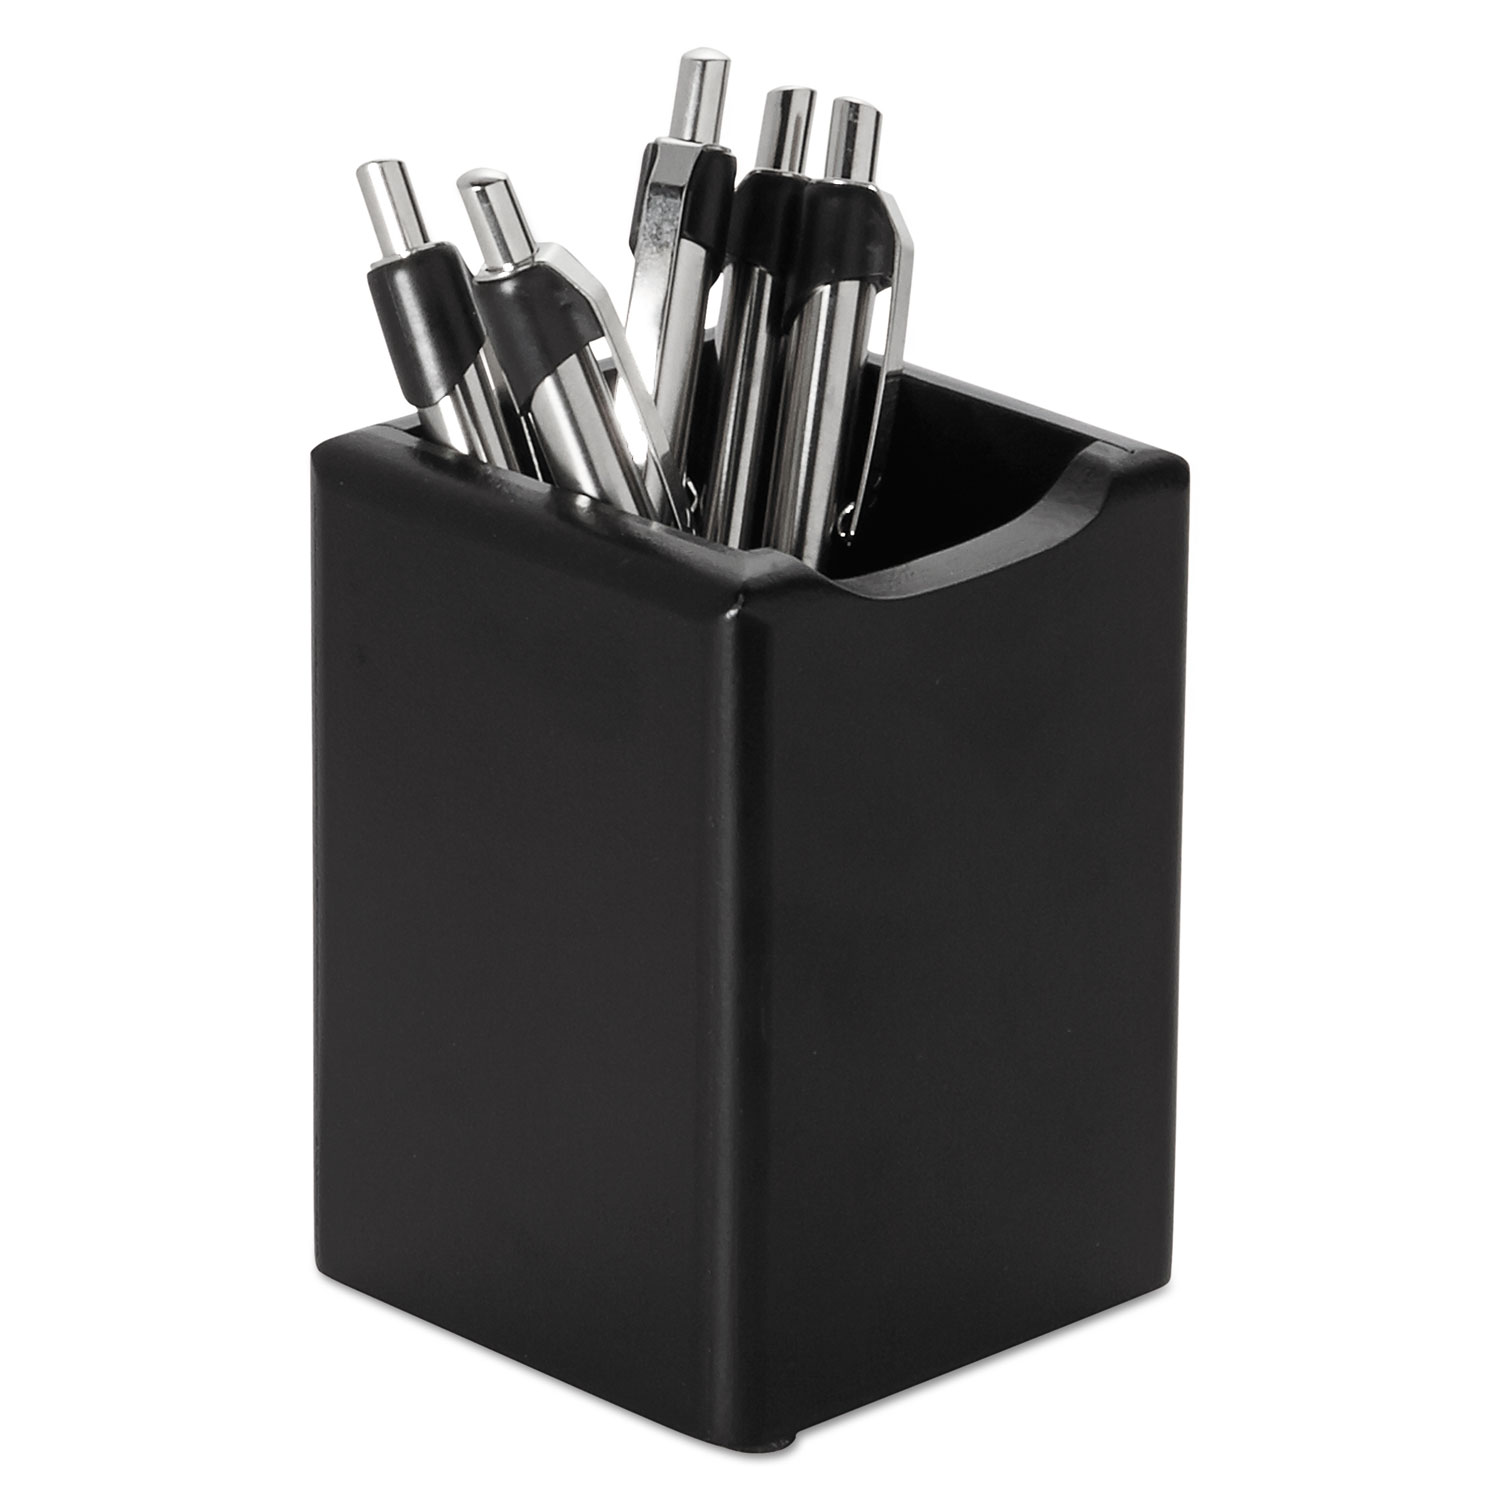 Wood Tones Pencil Cup, Black, 2 3/4 x 2 3/4 x 4